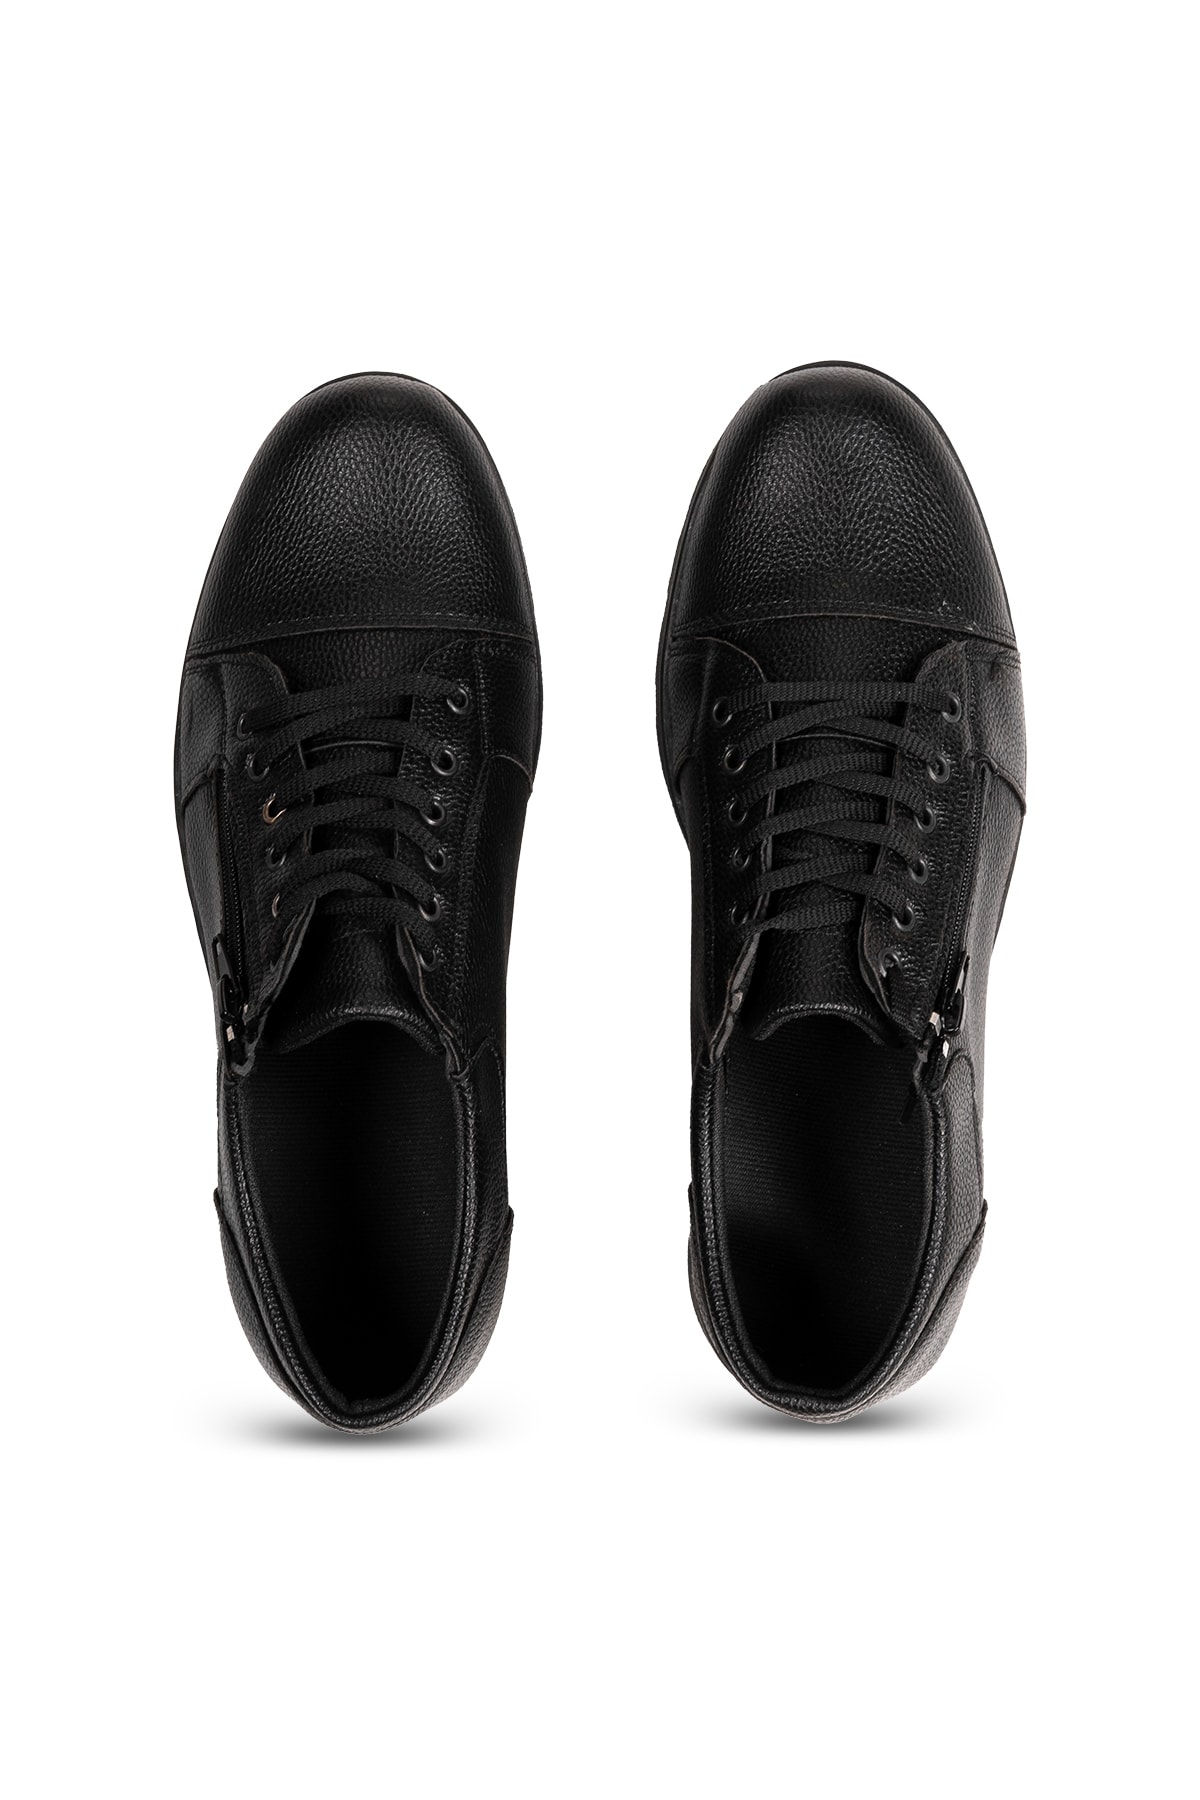 Armada Siyah Mevsimlik Günlük Kullanım Fermuarlı Erkek Ayakkabı